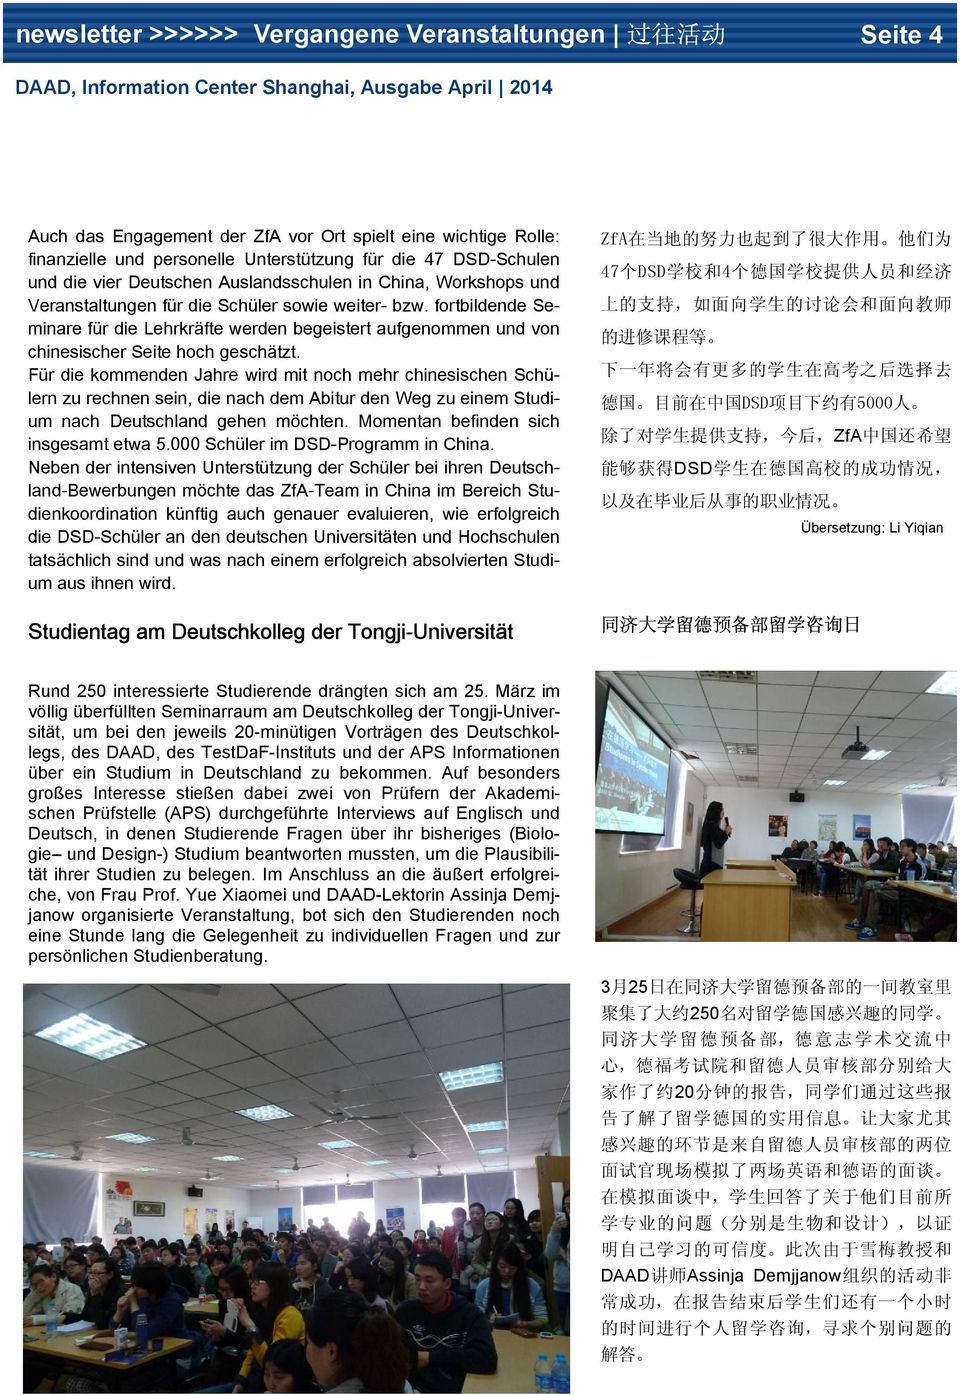 fortbildende Seminare für die Lehrkräfte werden begeistert aufgenommen und von chinesischer Seite hoch geschätzt.